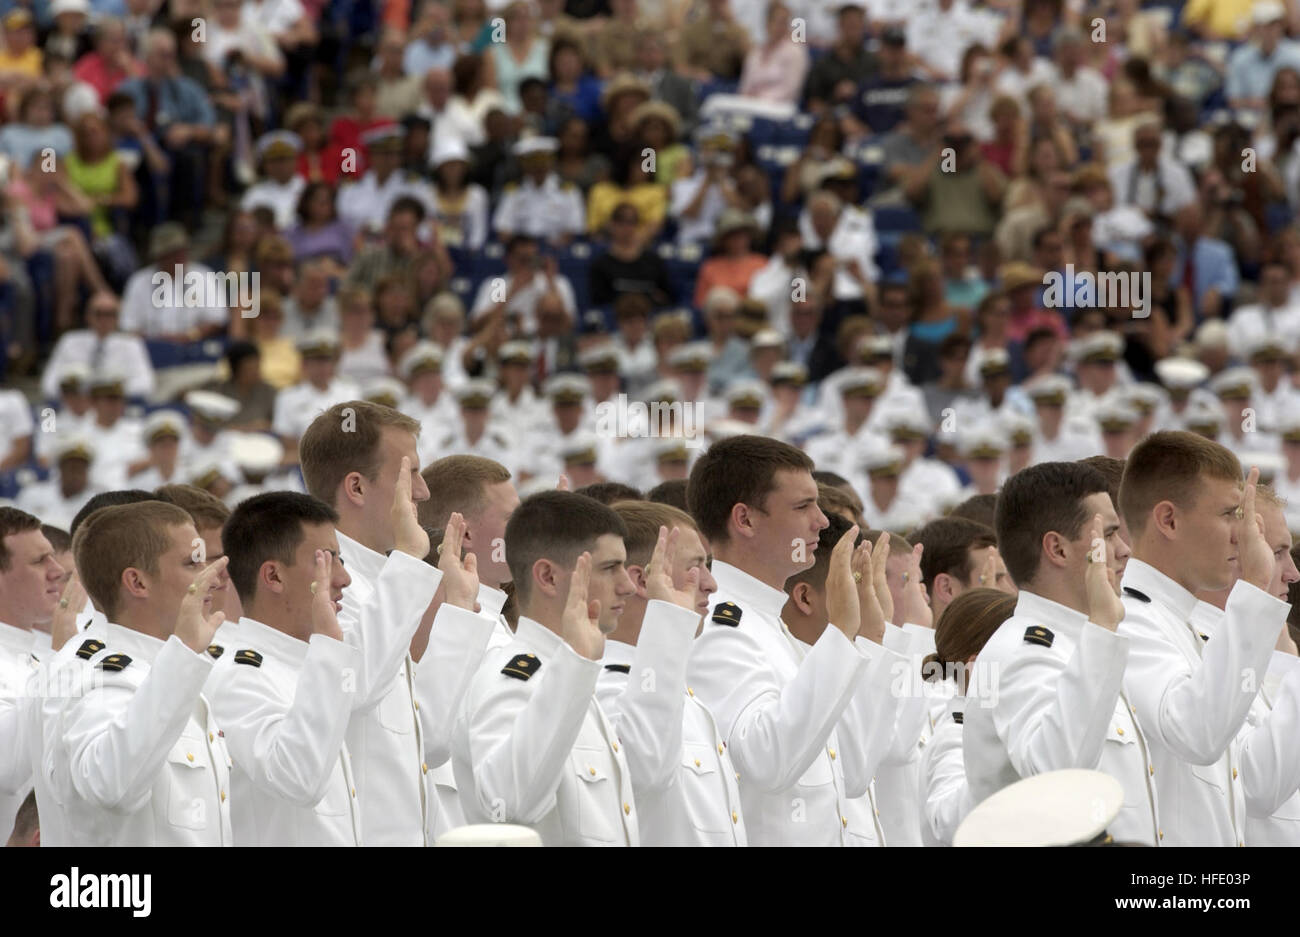 040528-N-9693M-014 United States Naval Academy (28. Mai 2004) - stehen Midshipmen während der Verabreichung von Eid des Amtes für Absolventen Eintritt in Dienst als ein Marine-Fähnrich bei der United States Naval Academy-Klasse 2004 Graduierung und Inbetriebnahme Zeremonie. Neunhundert neunzig Midshipmen studierte an der United States Naval Academy und wurde in das US-Militär Offiziere. Gen Meyers lieferte die Eröffnungsrede und persönlich begrüßt jeder Absolvent während der Zeremonie. Die Männer und Frauen der Abschlussklasse wurden in der Marine als Flaggen oder in der Marine Corps als Leutnant vereidigt. Stockfoto